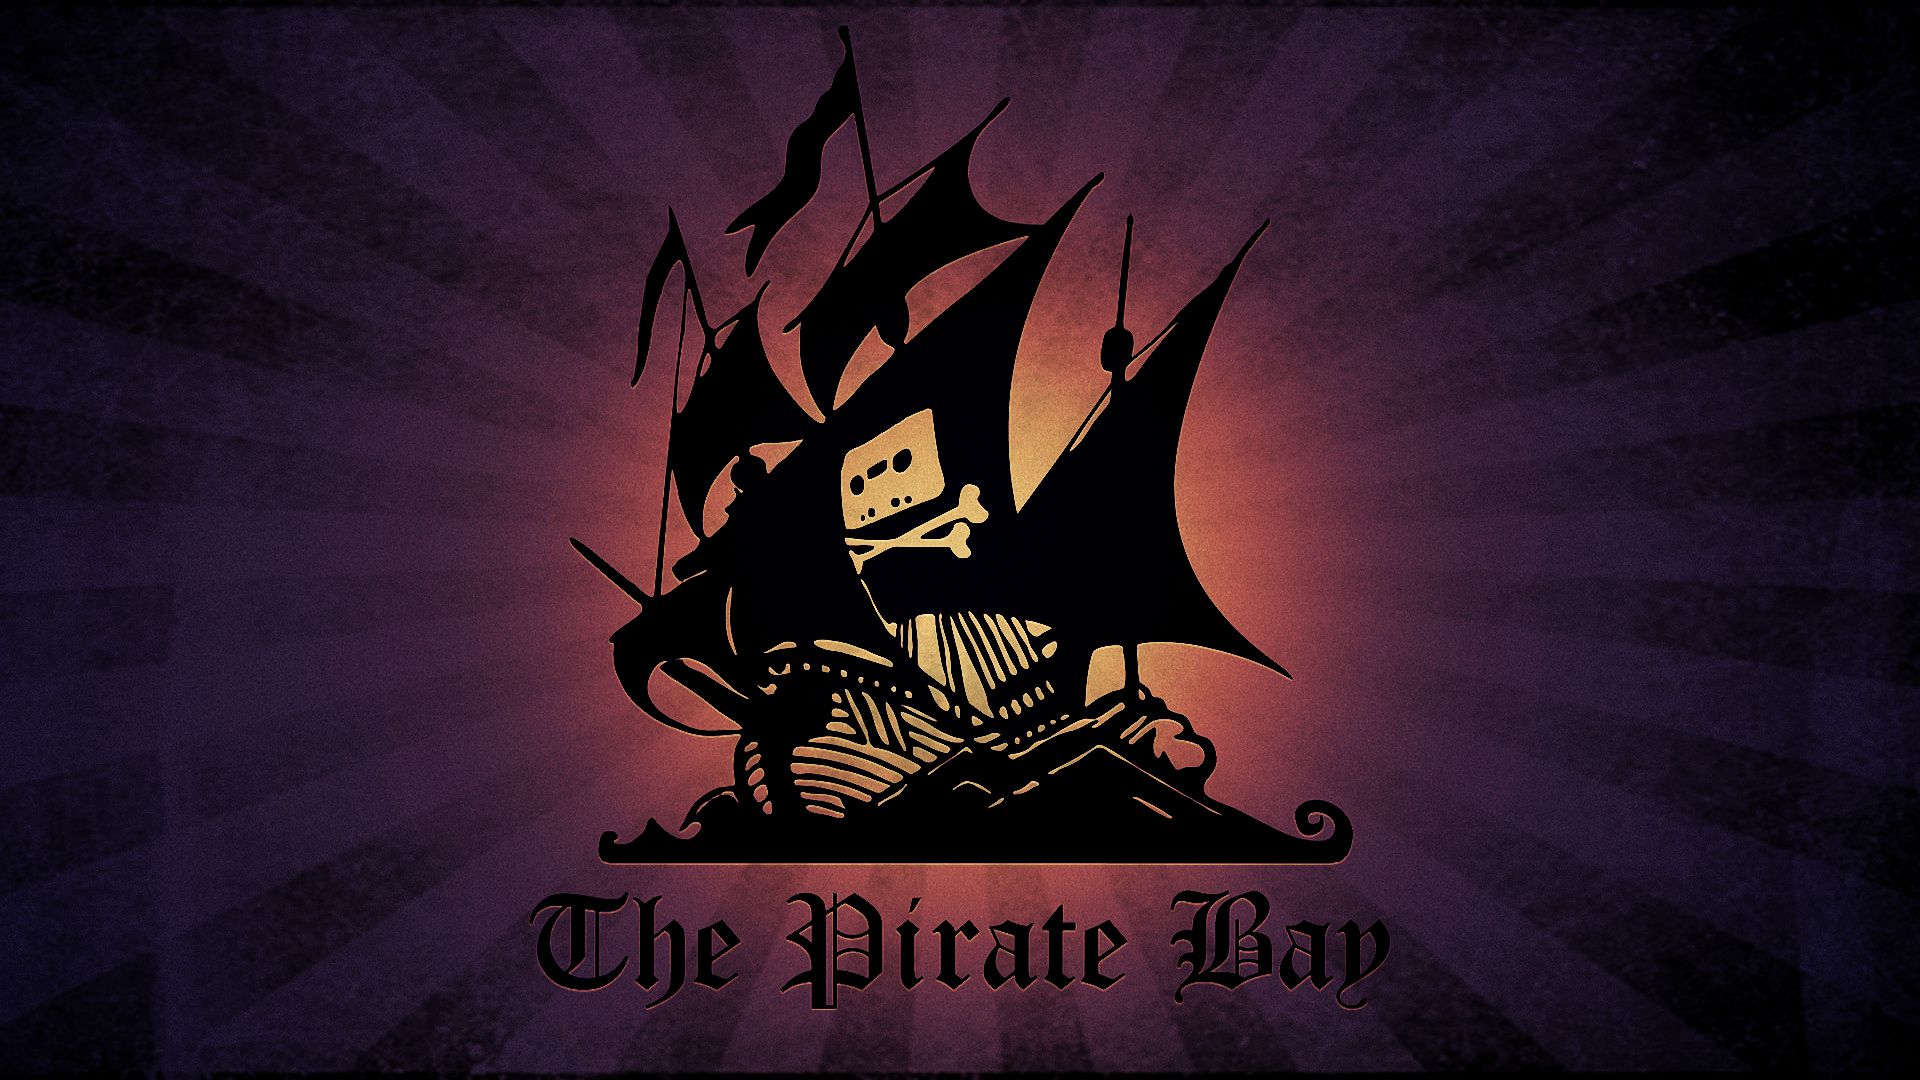 Você sabe qual é o arquivo mais antigo do The Pirate Bay?